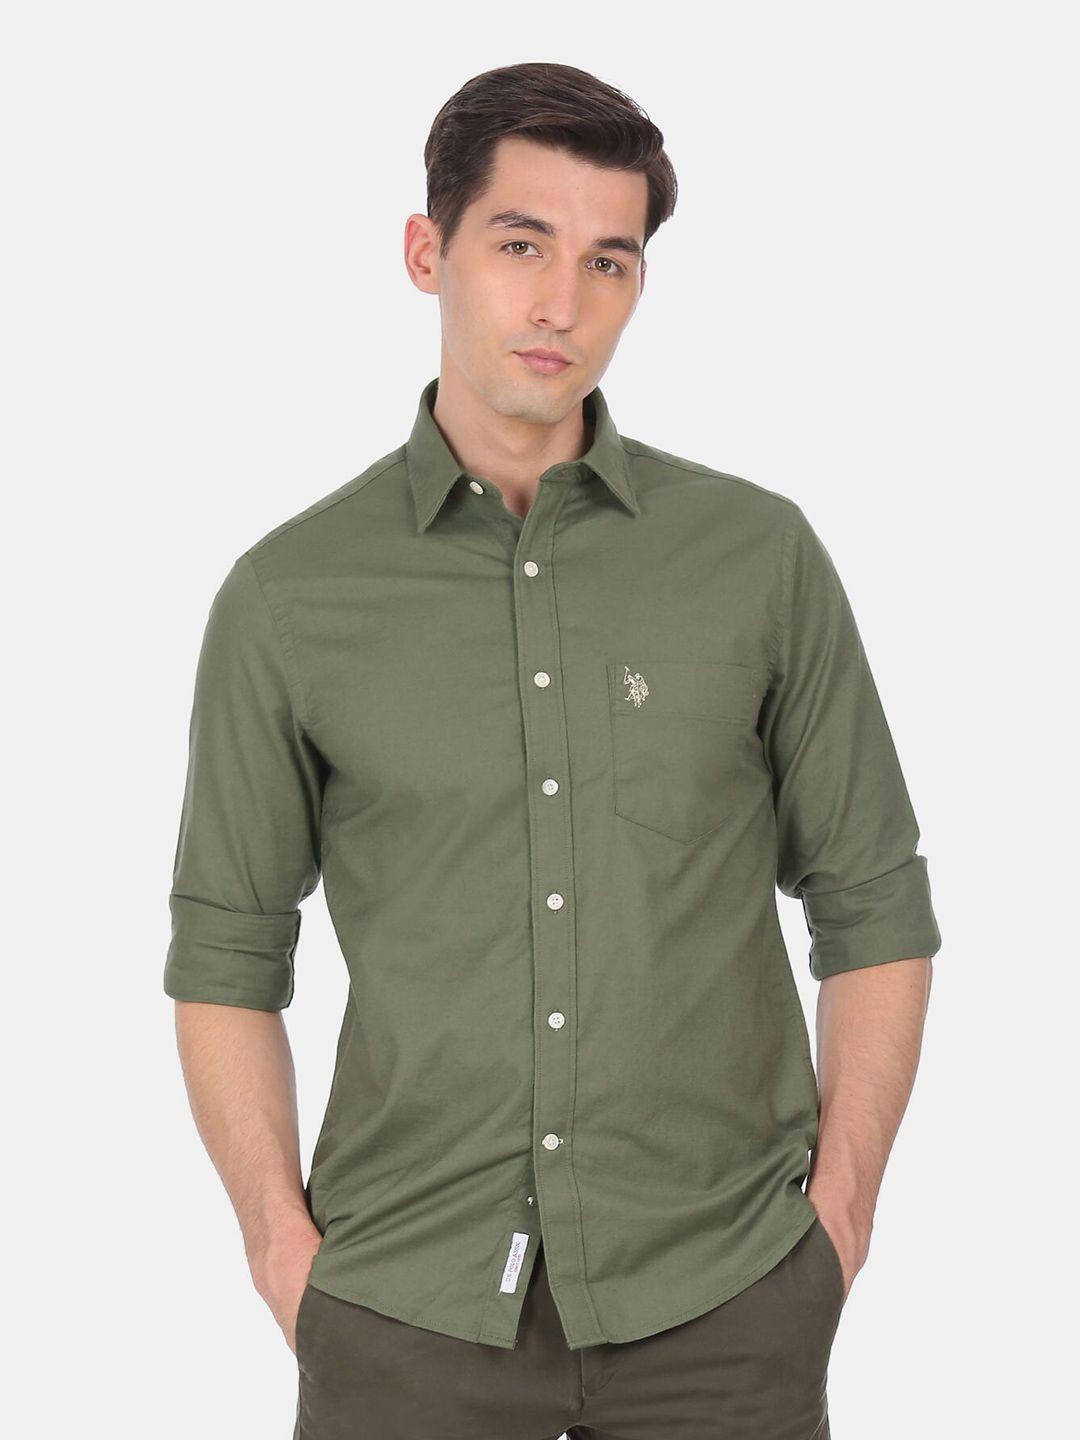 u s polo assn men green cotton casual shirt